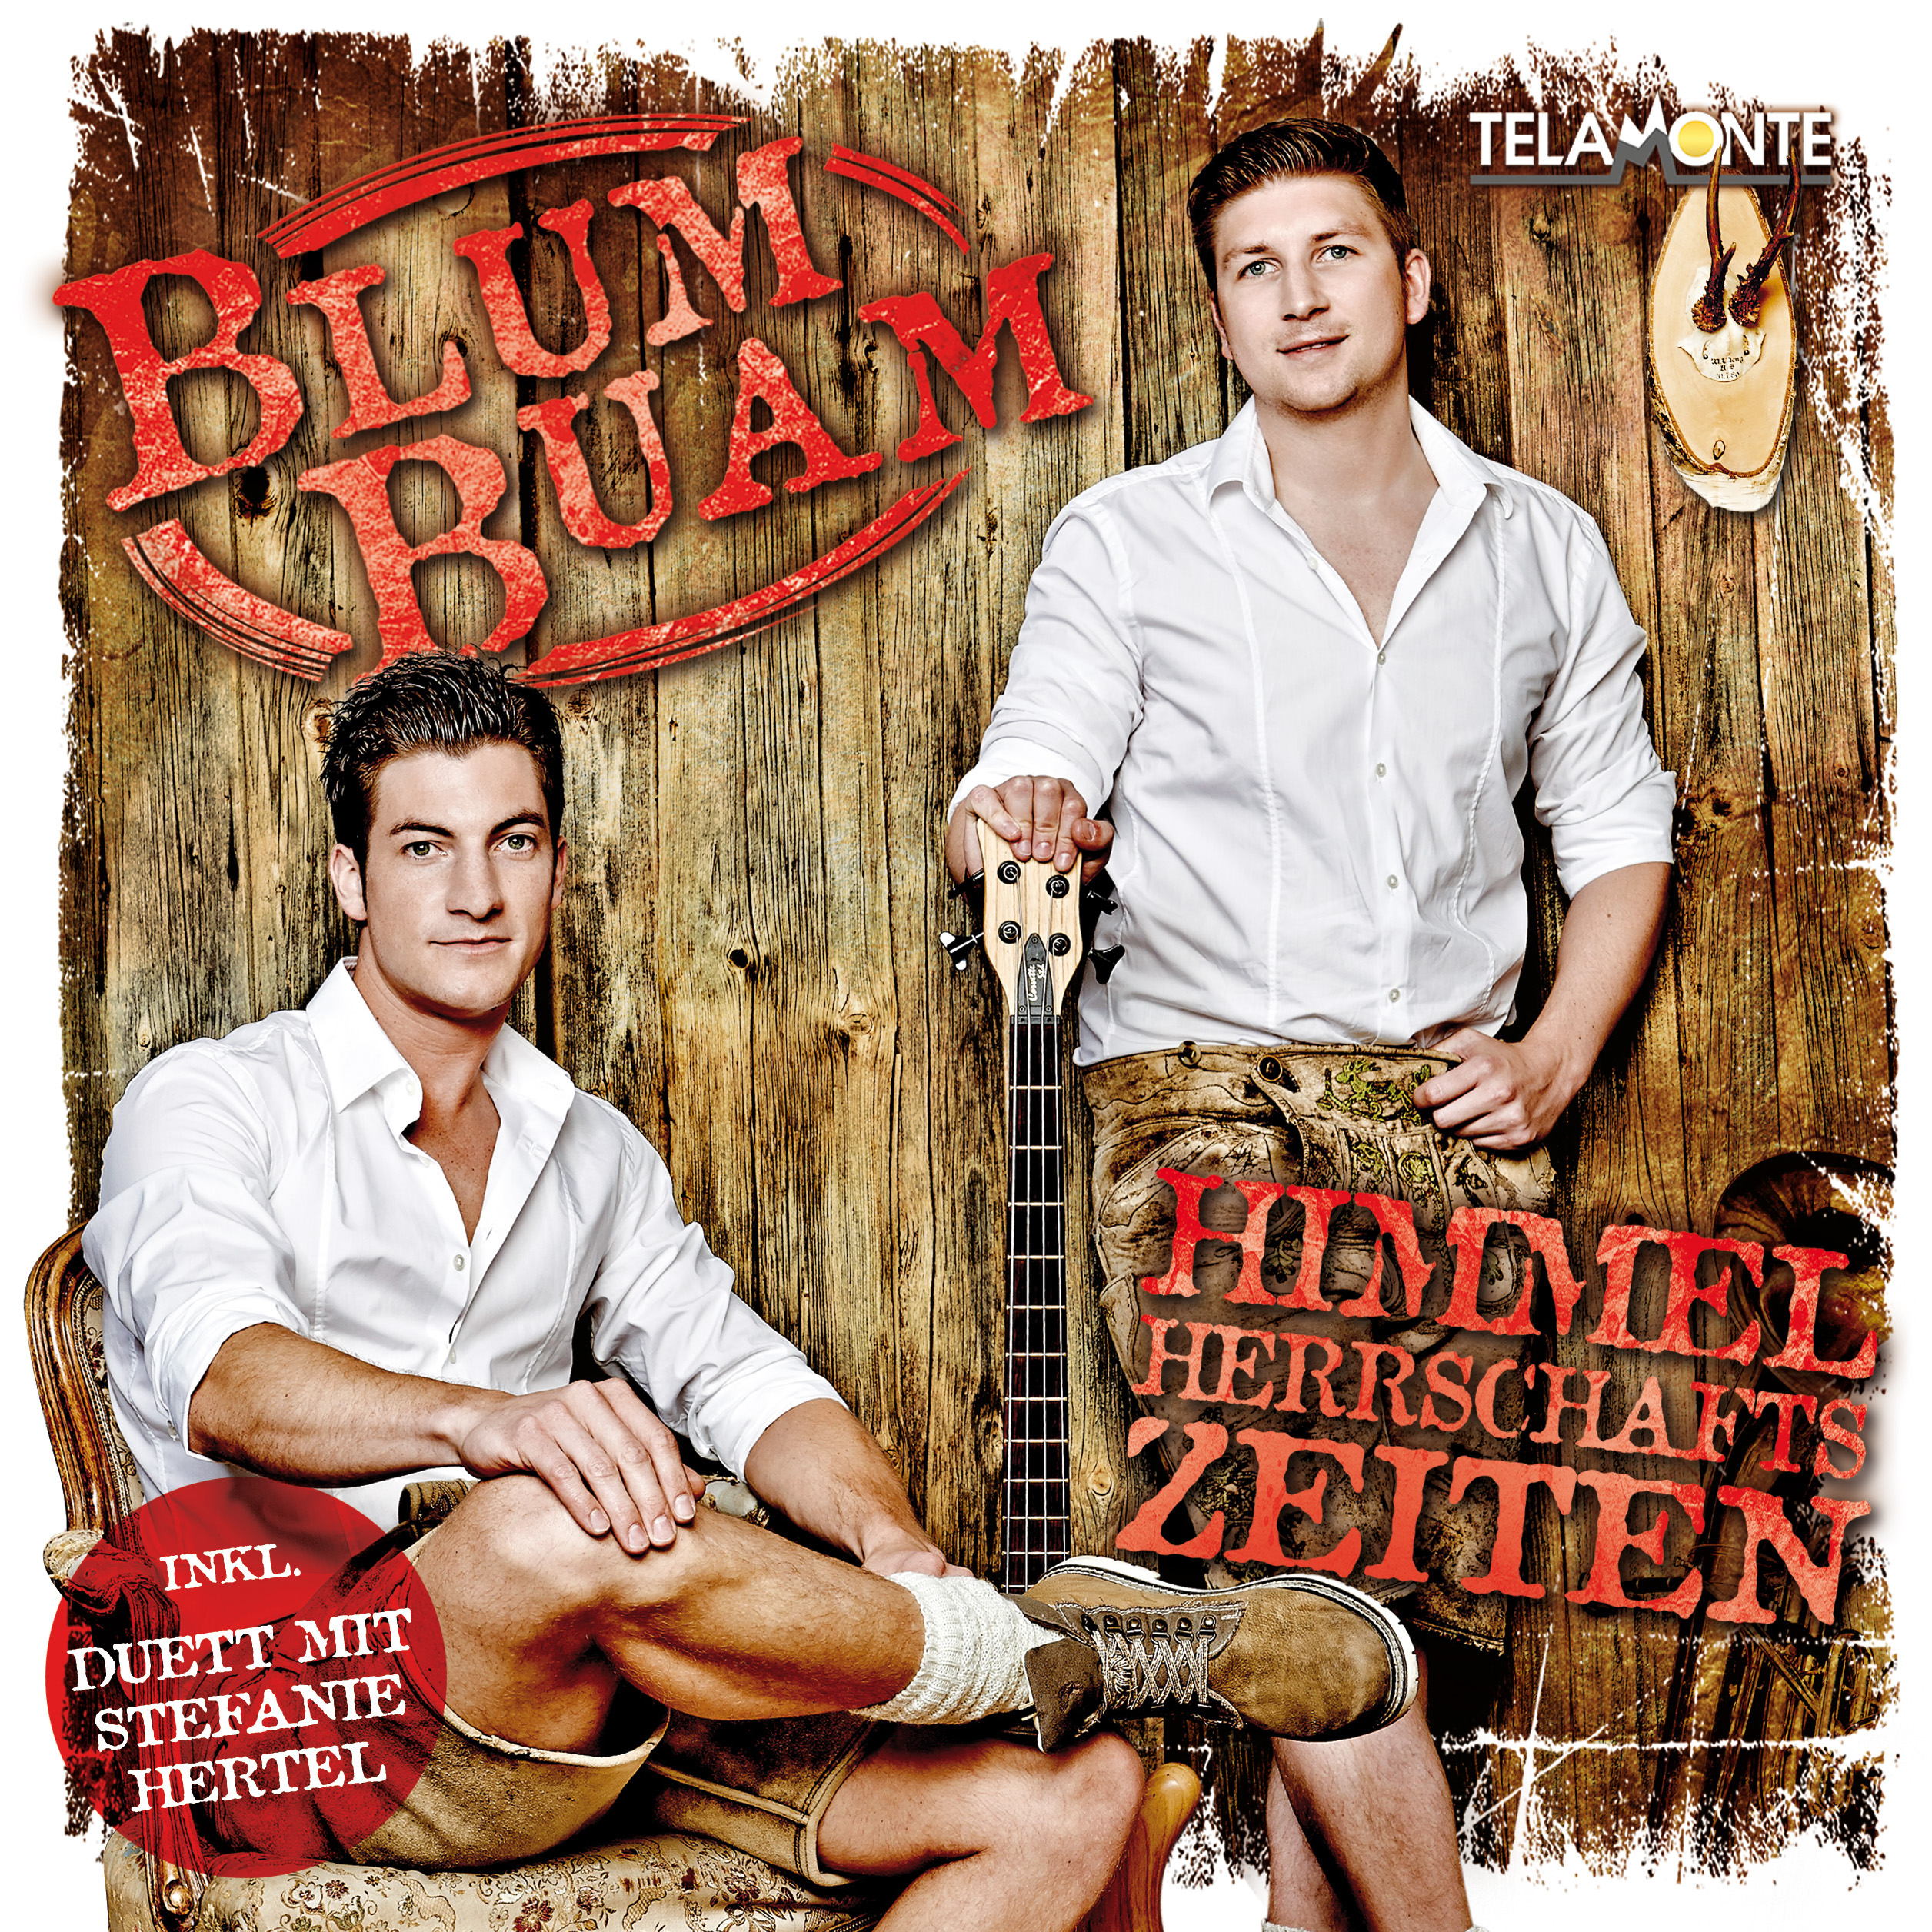 Buam - Blum Himmelherrschaftszeiten (CD) -